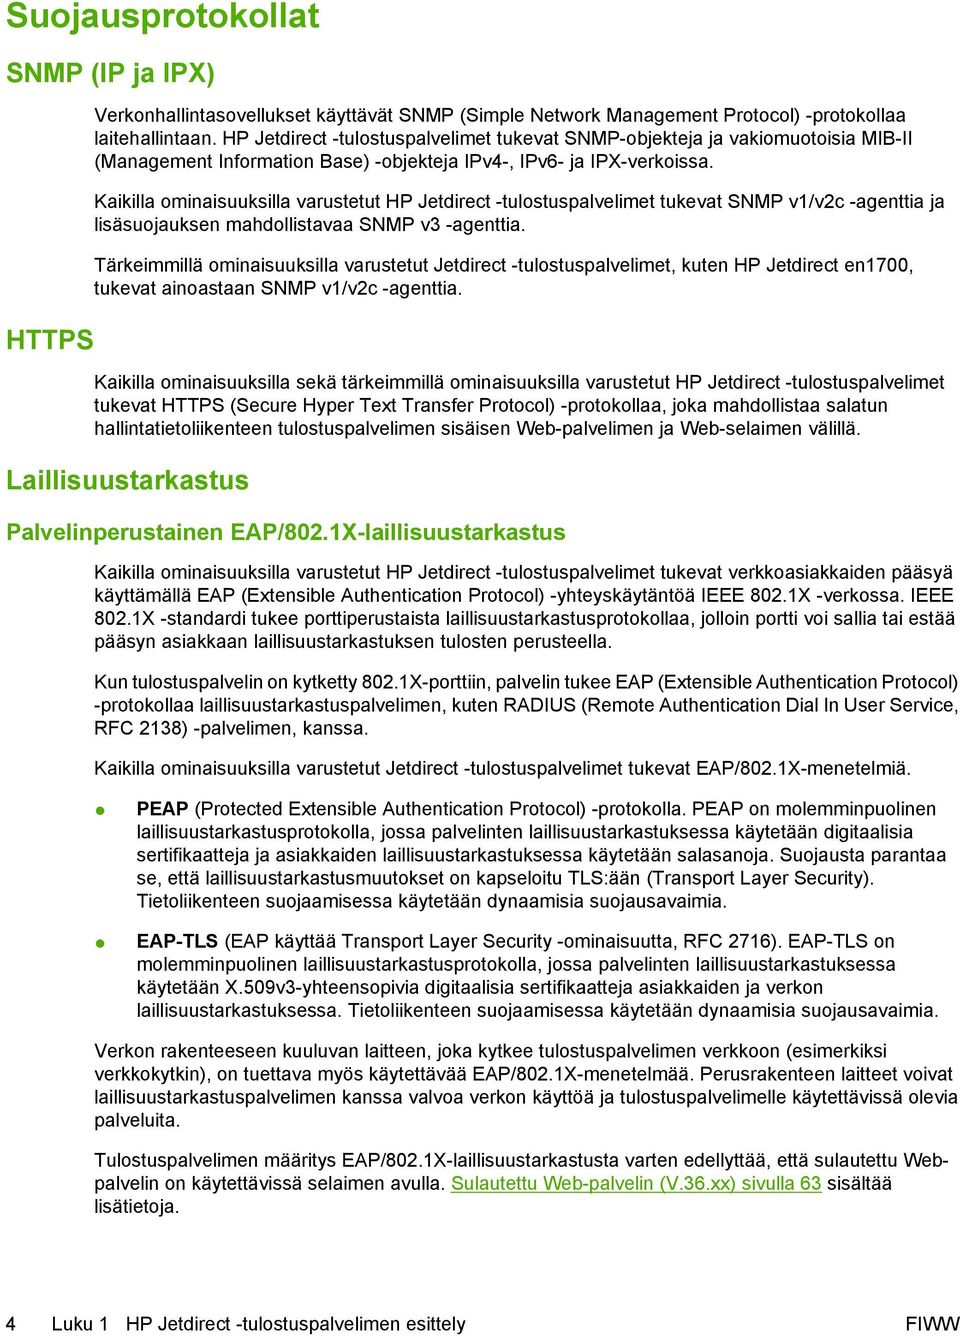 Kaikilla ominaisuuksilla varustetut HP Jetdirect -tulostuspalvelimet tukevat SNMP v1/v2c -agenttia ja lisäsuojauksen mahdollistavaa SNMP v3 -agenttia.